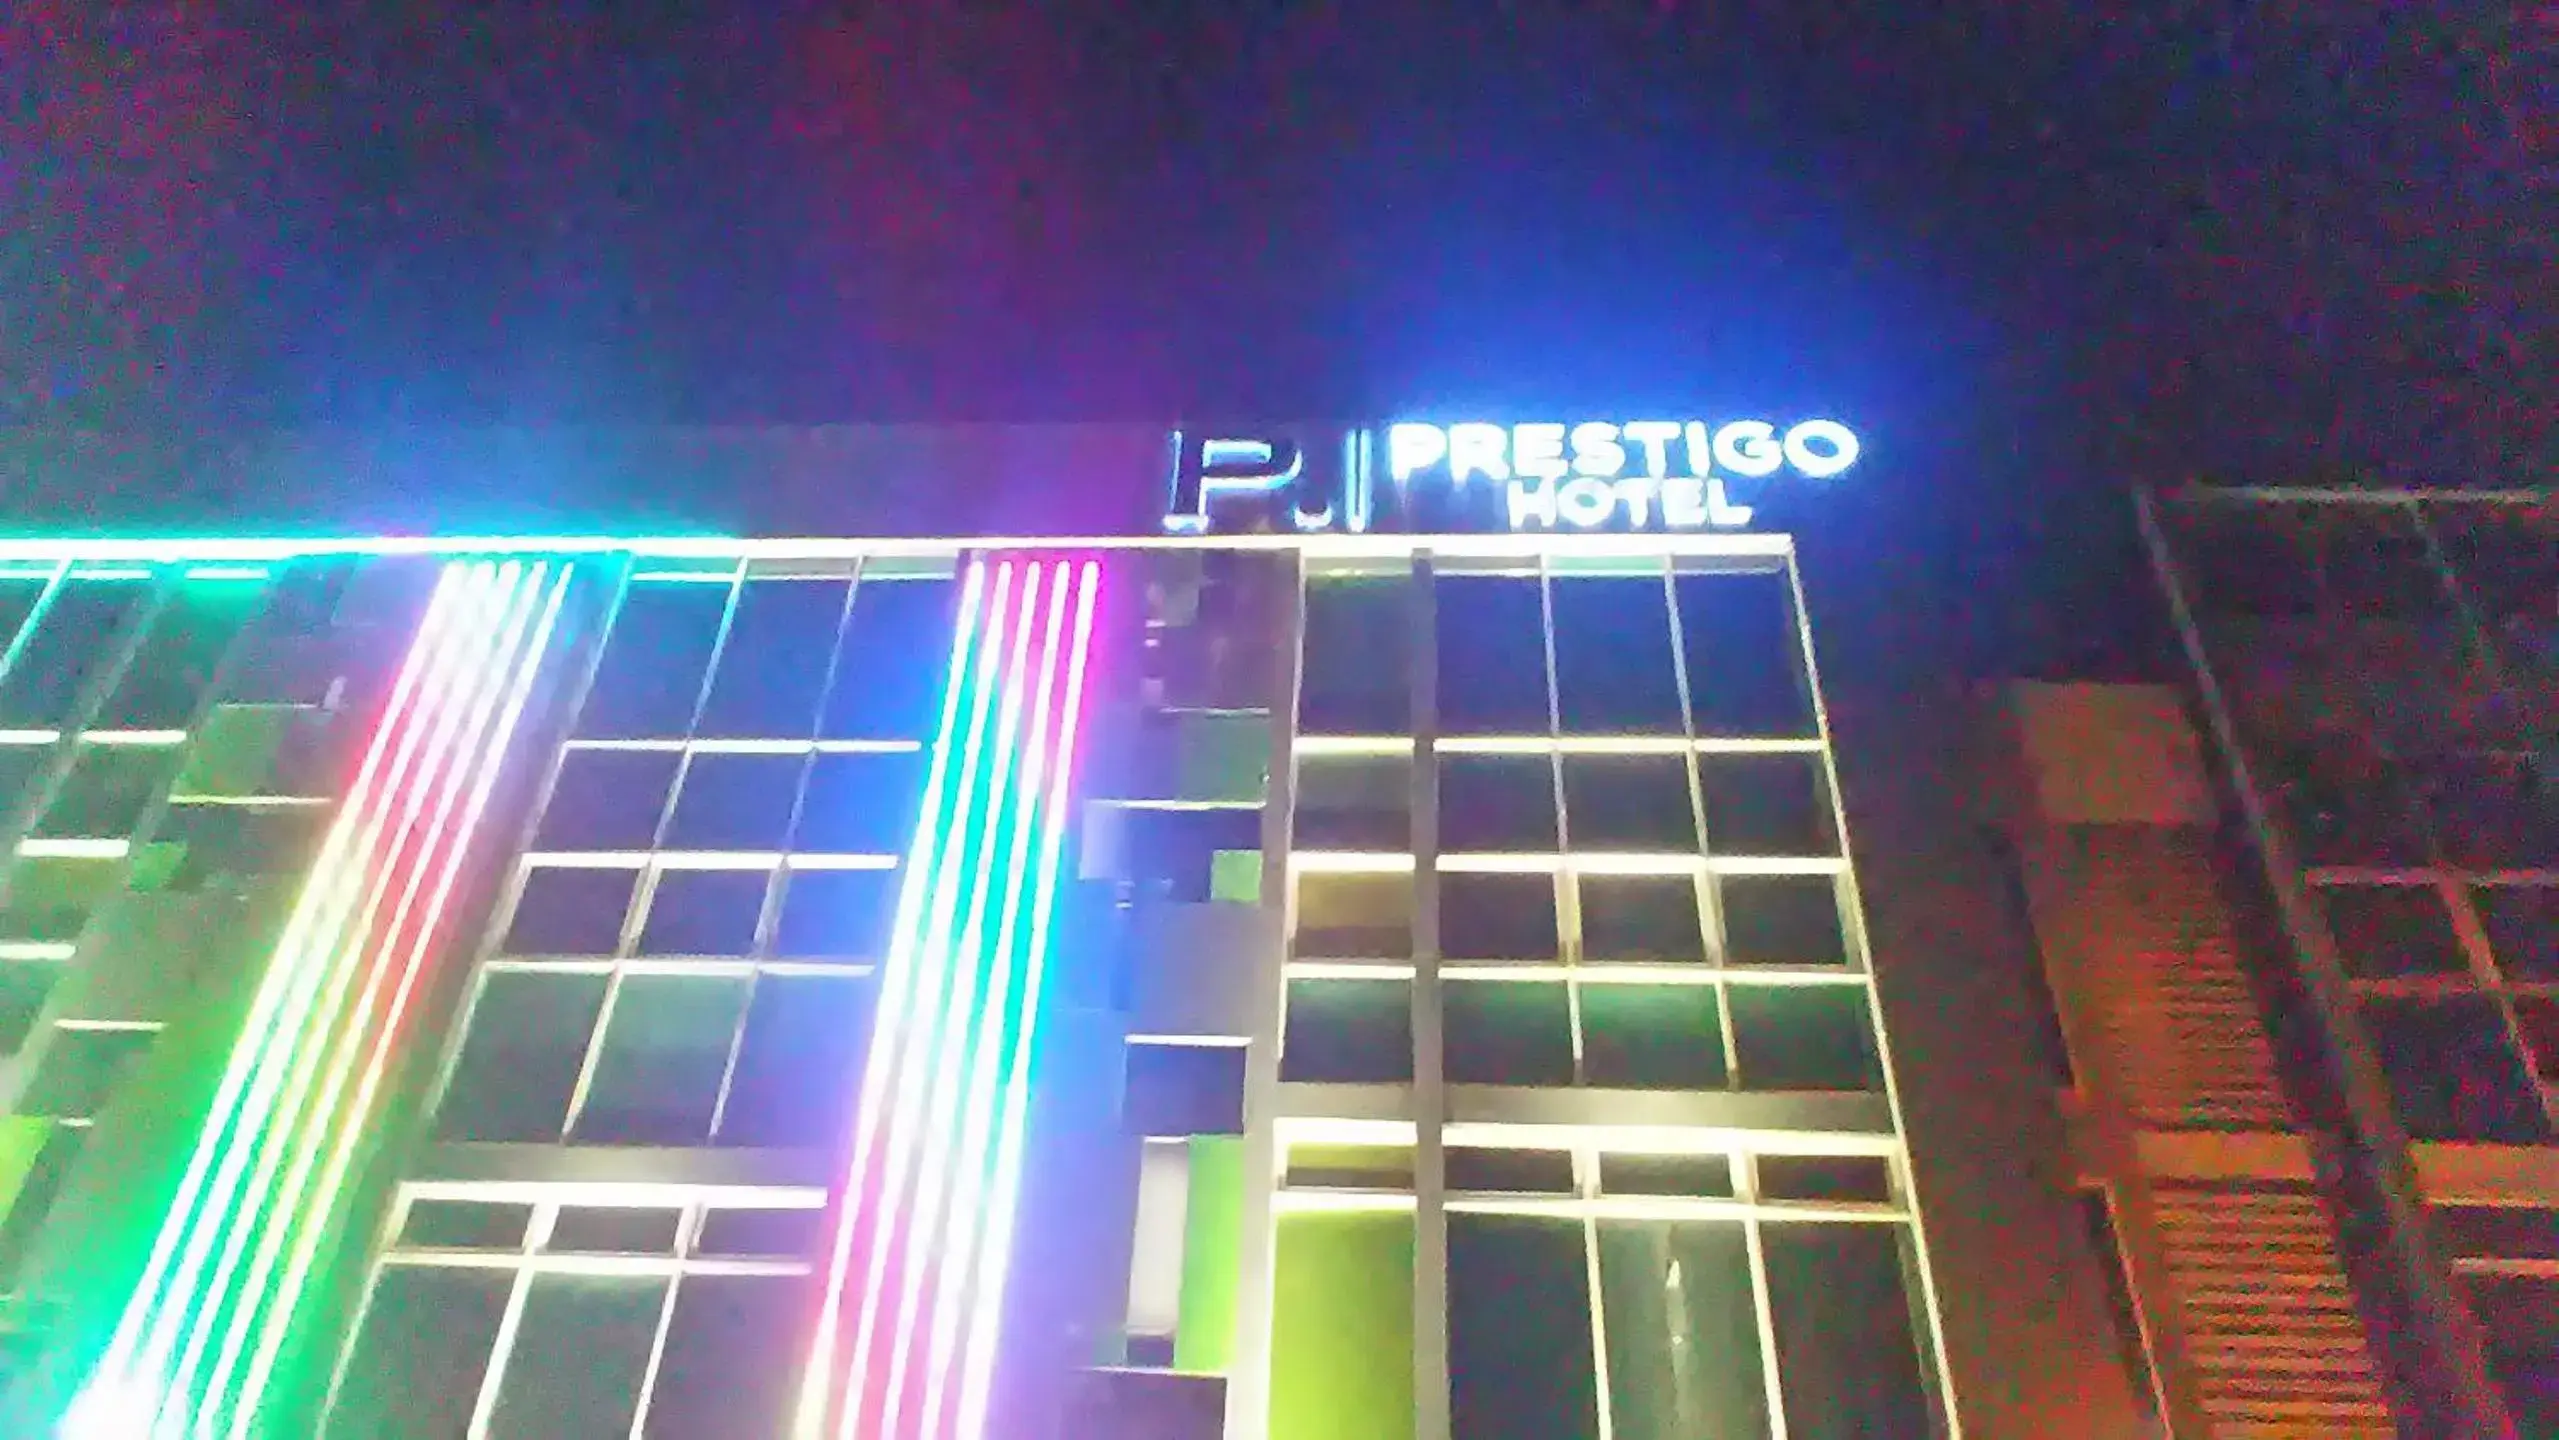 Property logo or sign, Property Building in Prestigo Hotel - Johor Bharu